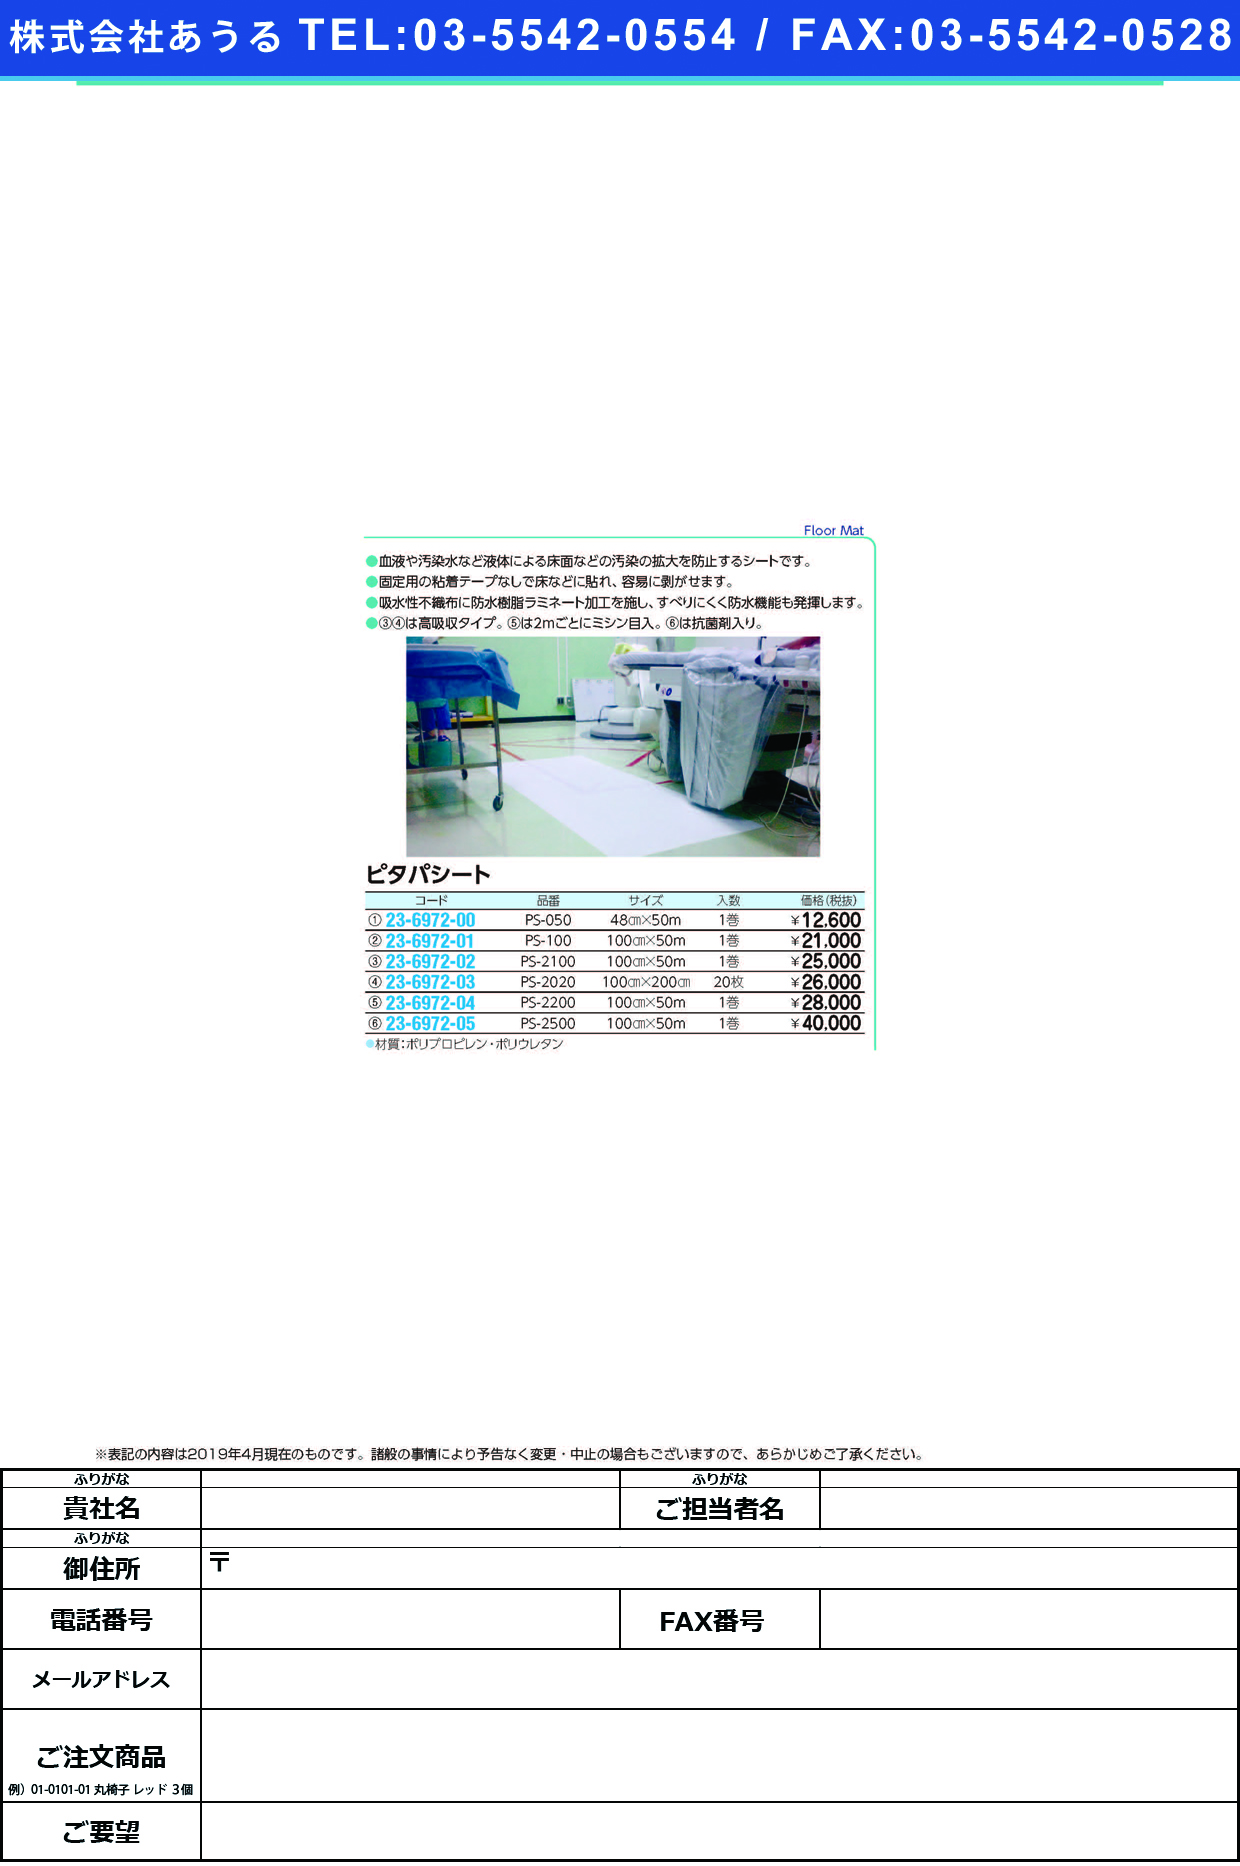 (23-6972-03)ピタパシート PS-2020(20ﾏｲｲﾘ) ﾋﾟﾀﾊﾟｼｰﾄ(バイリーンクリエイト)【1梱単位】【2019年カタログ商品】